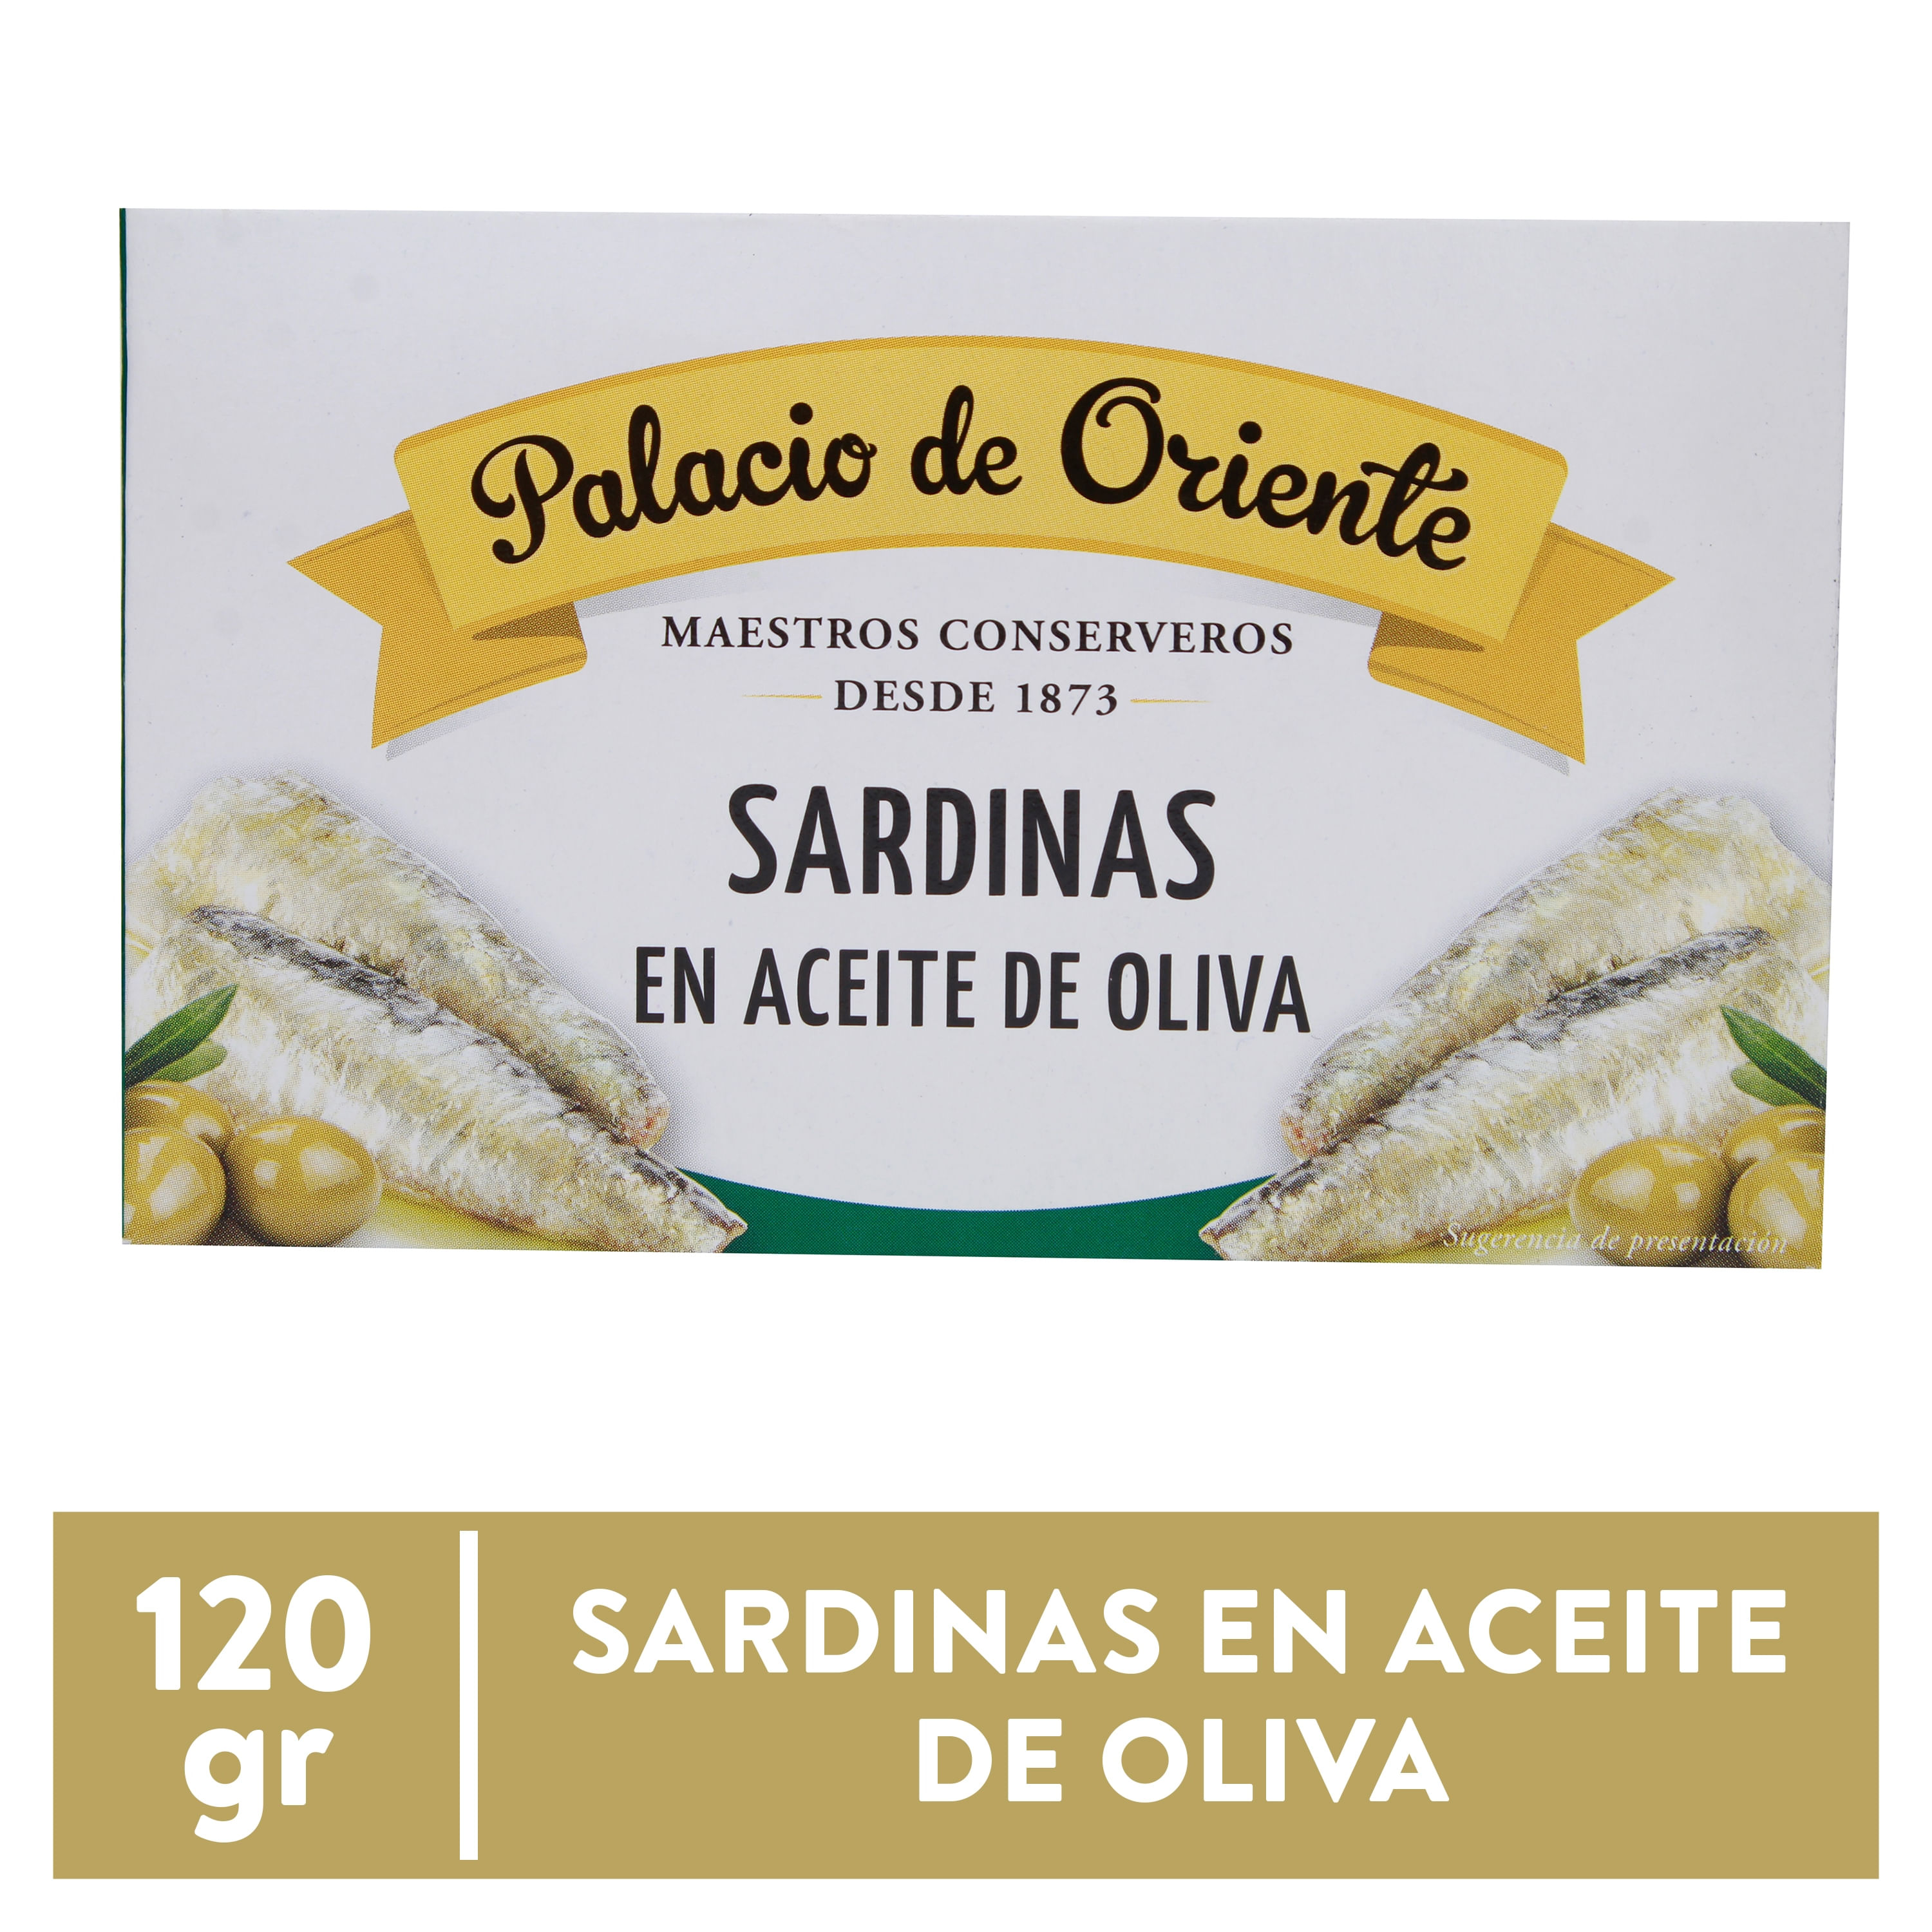 Sardina-Palacio-De-Oriente-Aceite-Oliva-120gr-1-73312